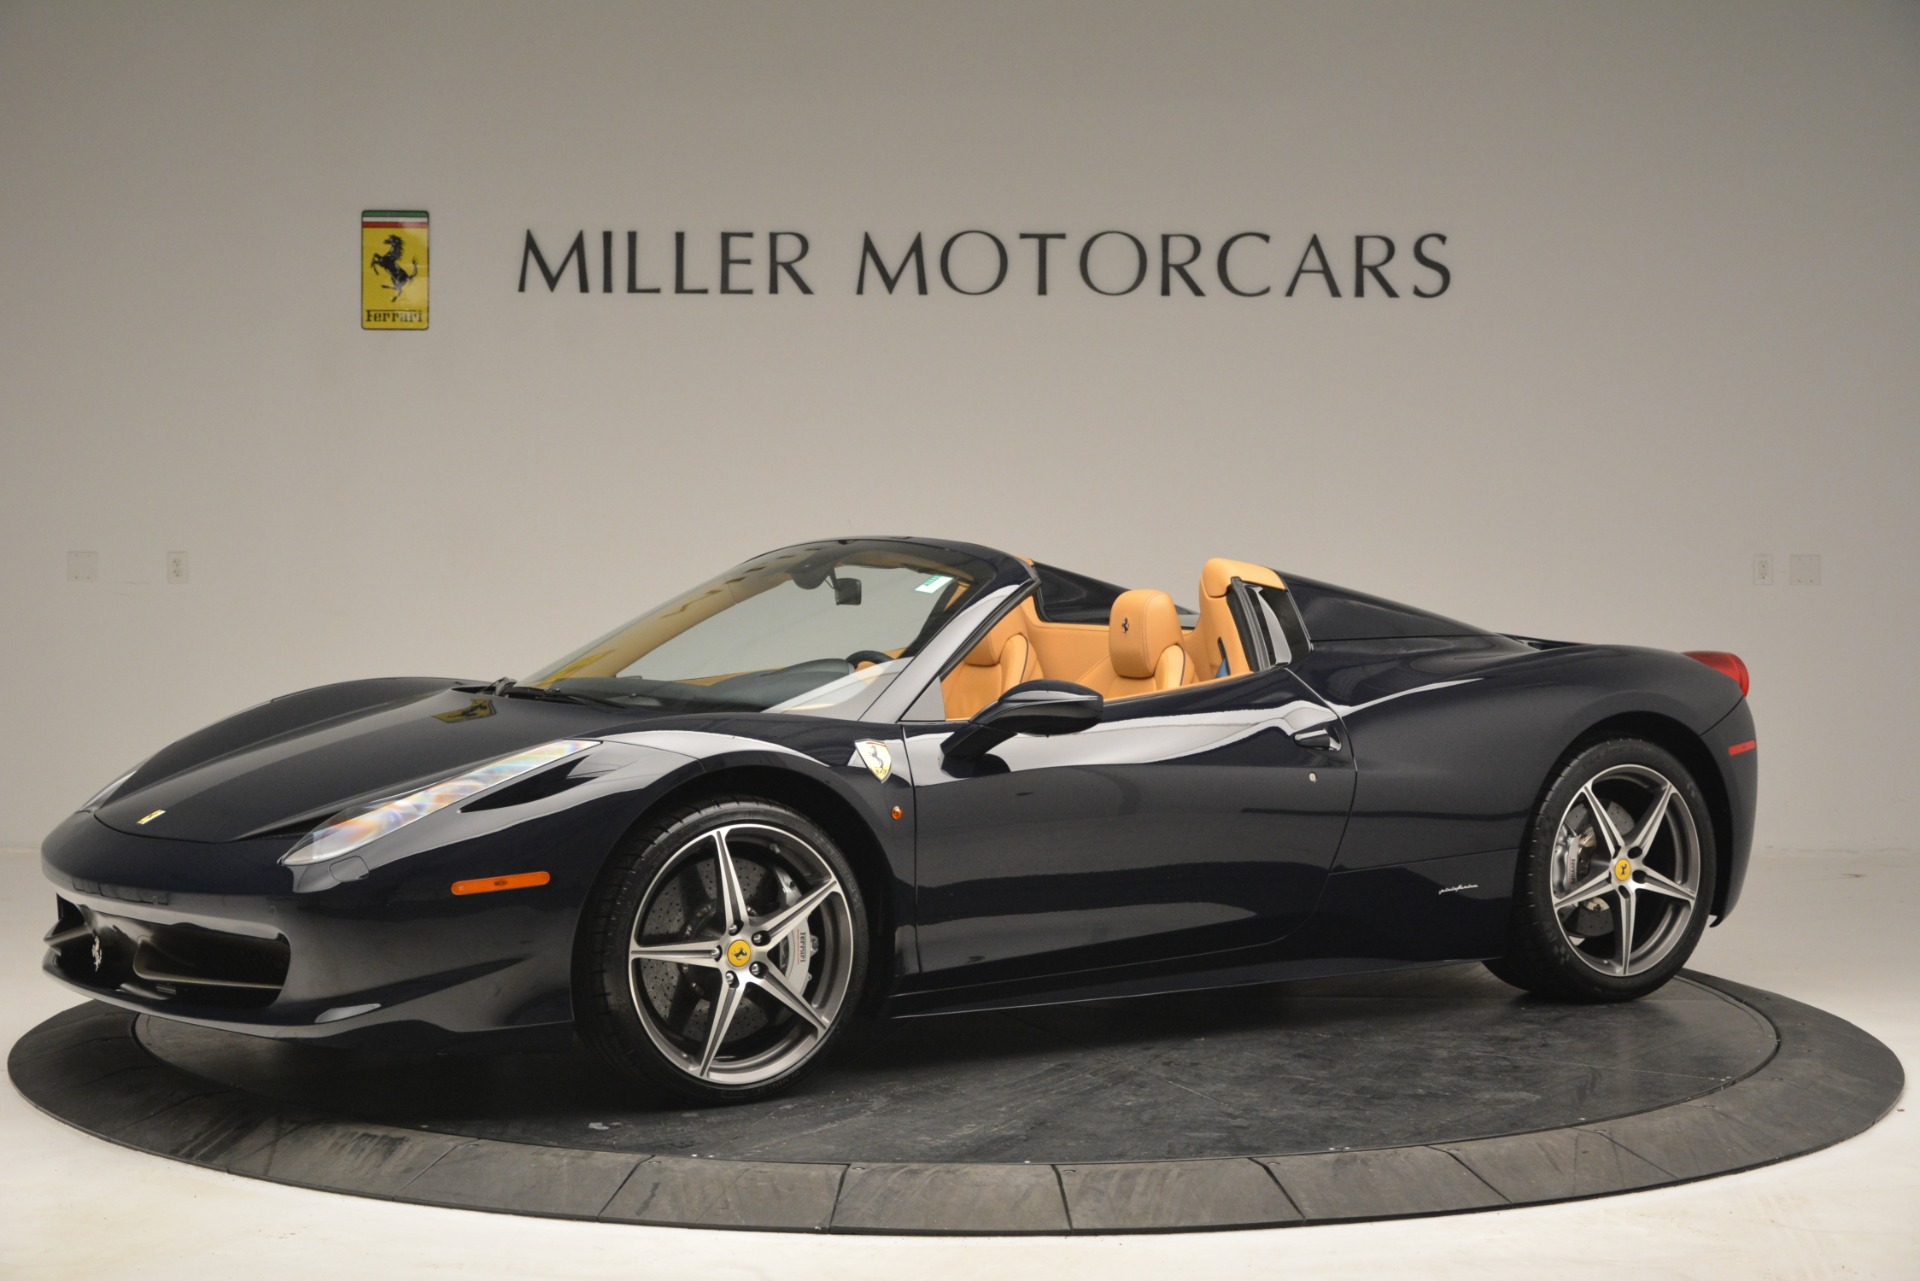 Pre-Owned 2014 Ferrari 458 Spider For Sale () | Miller Motorcars Stock #4513